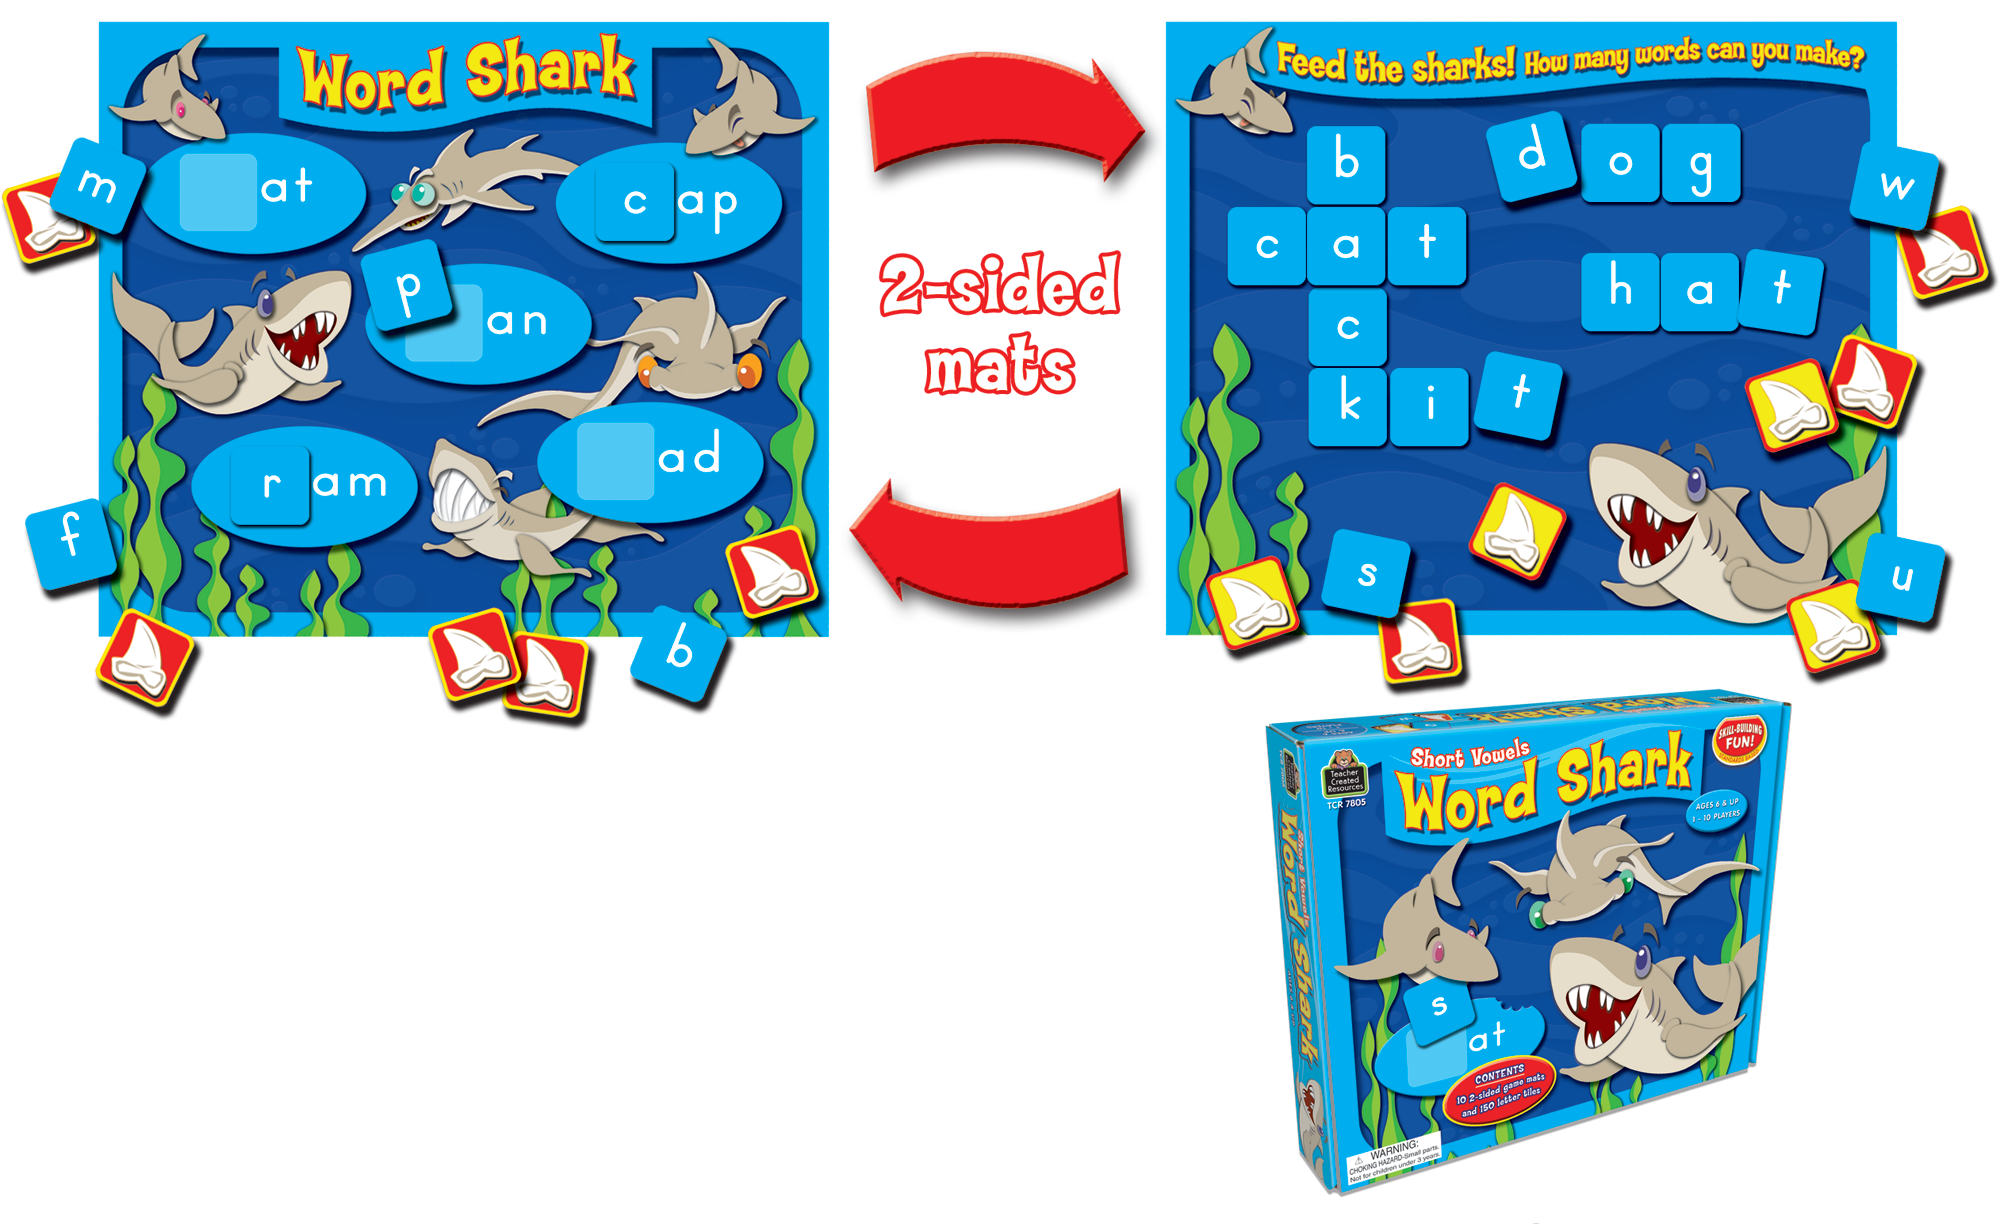 Word Shark: Short Vowels Game